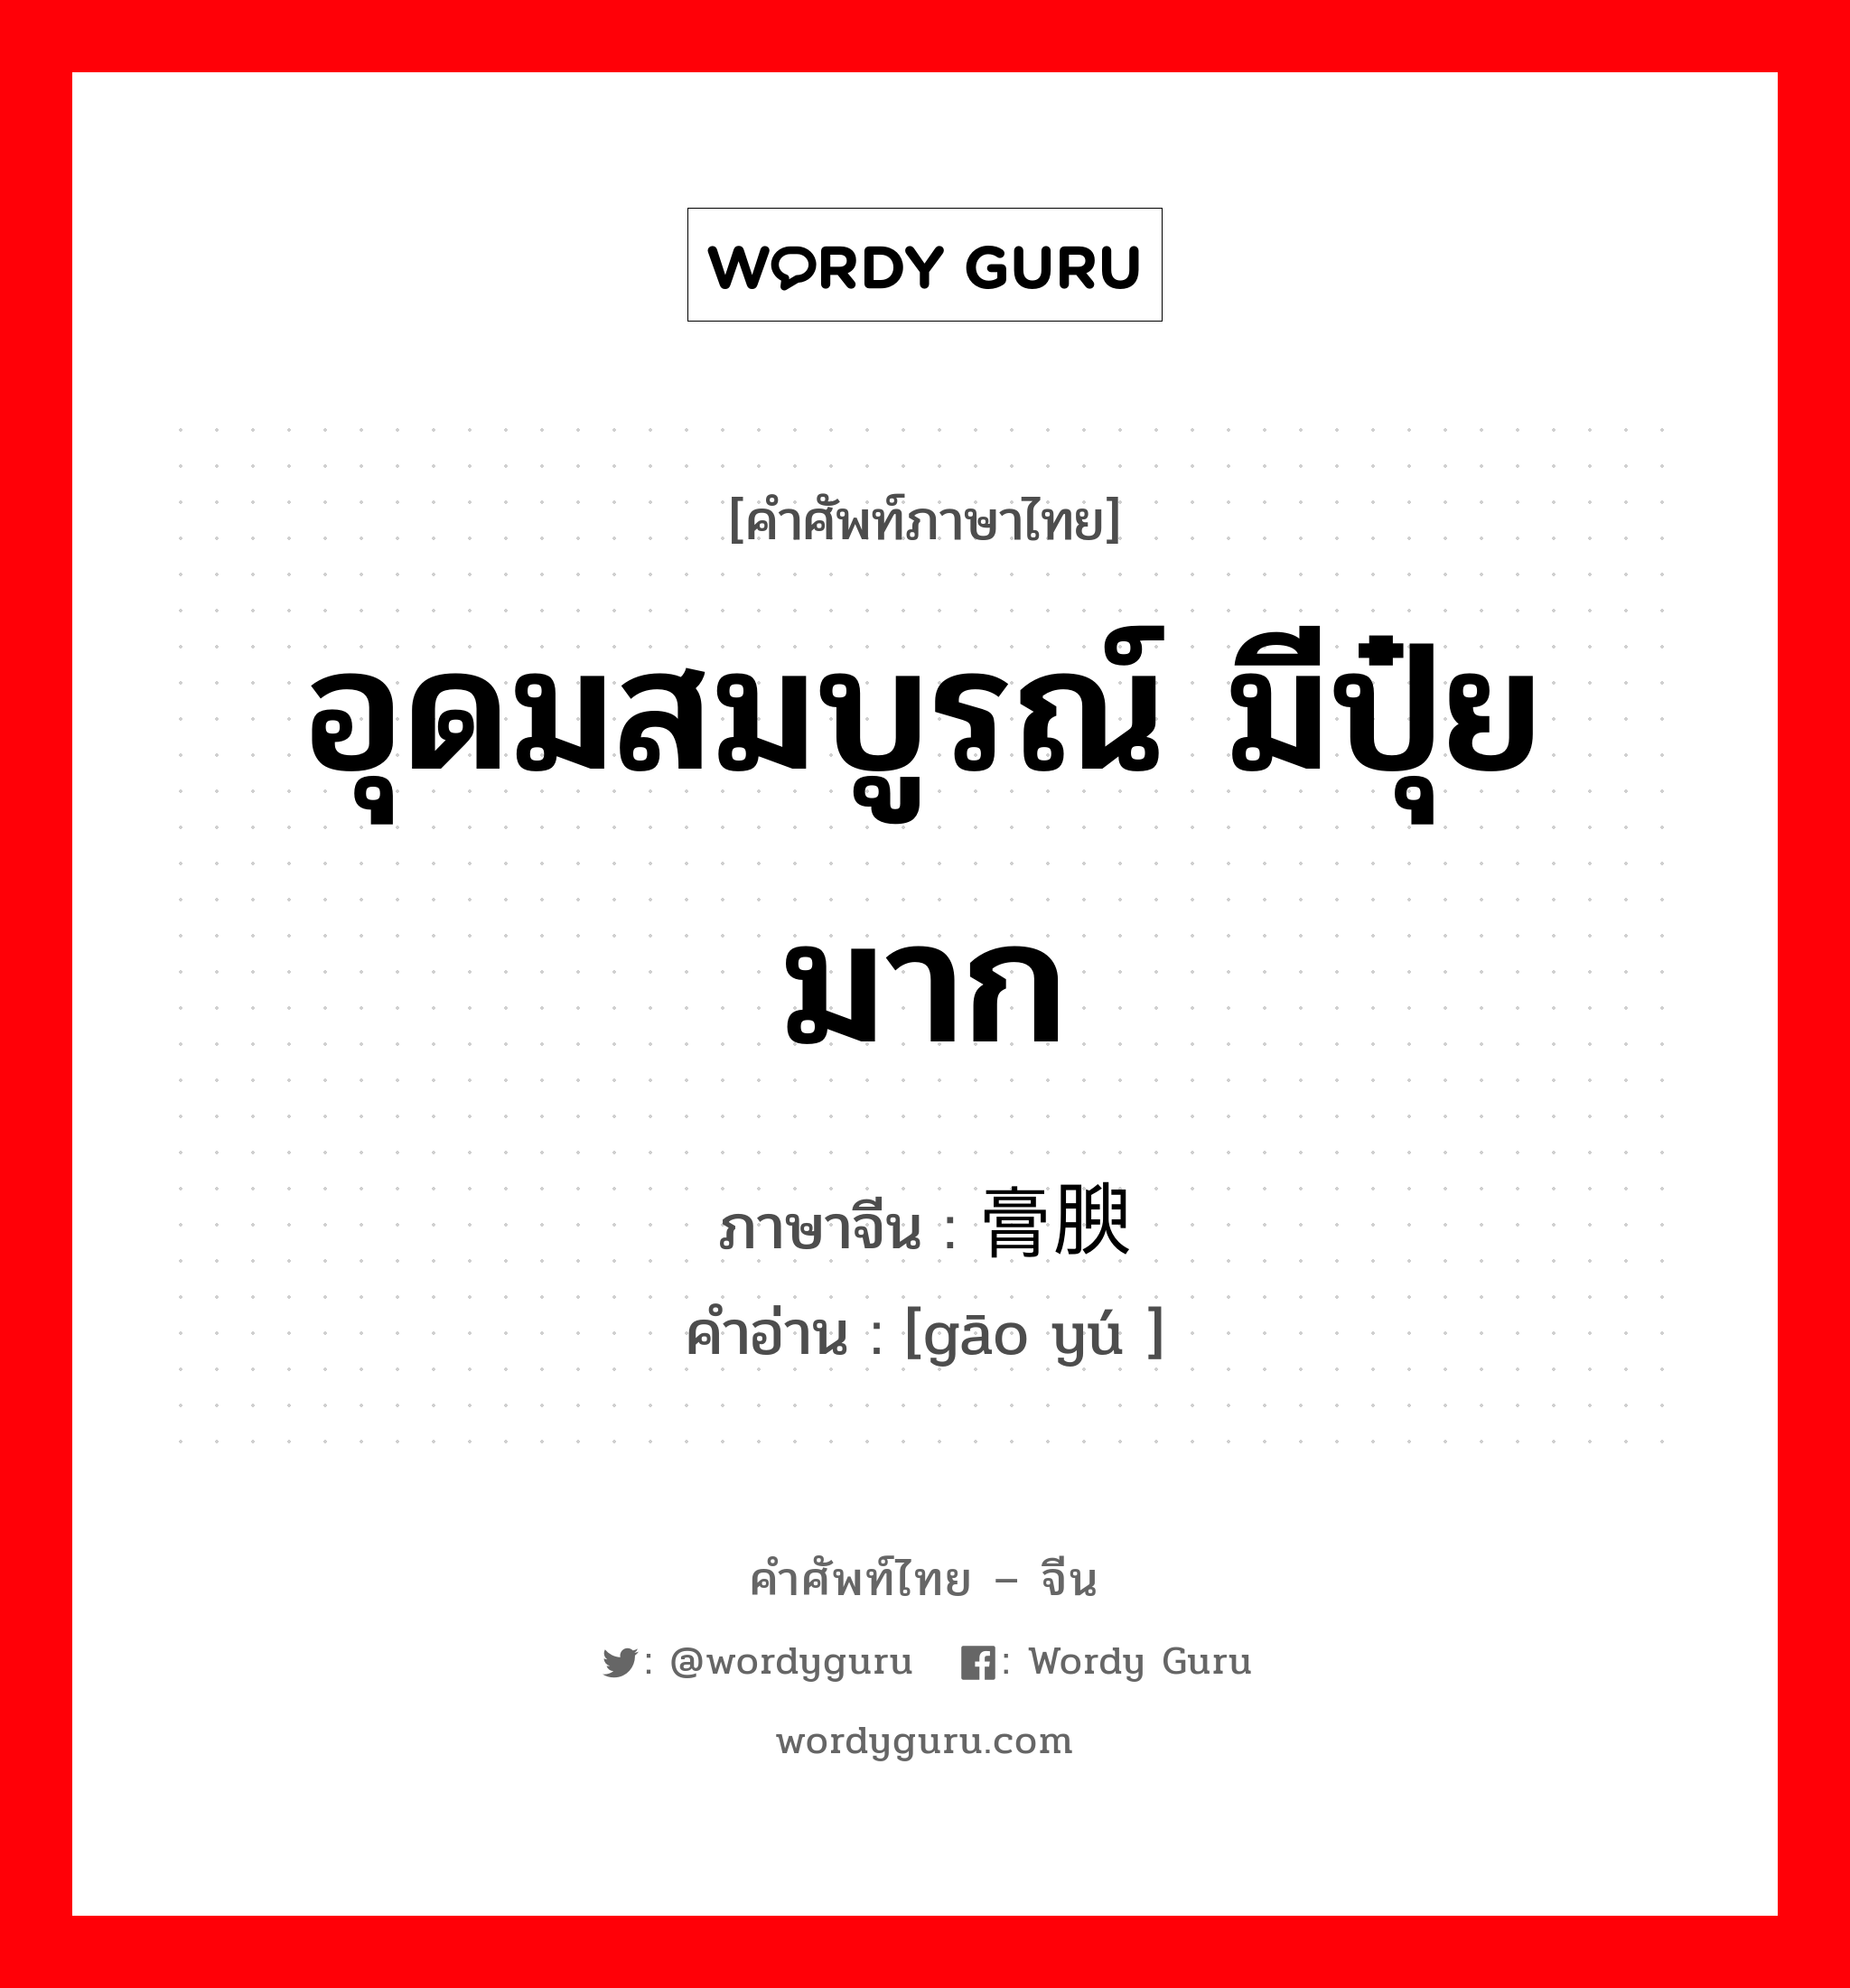 อุดมสมบูรณ์ มีปุ๋ยมาก ภาษาจีนคืออะไร, คำศัพท์ภาษาไทย - จีน อุดมสมบูรณ์ มีปุ๋ยมาก ภาษาจีน 膏腴 คำอ่าน [gāo yú ]